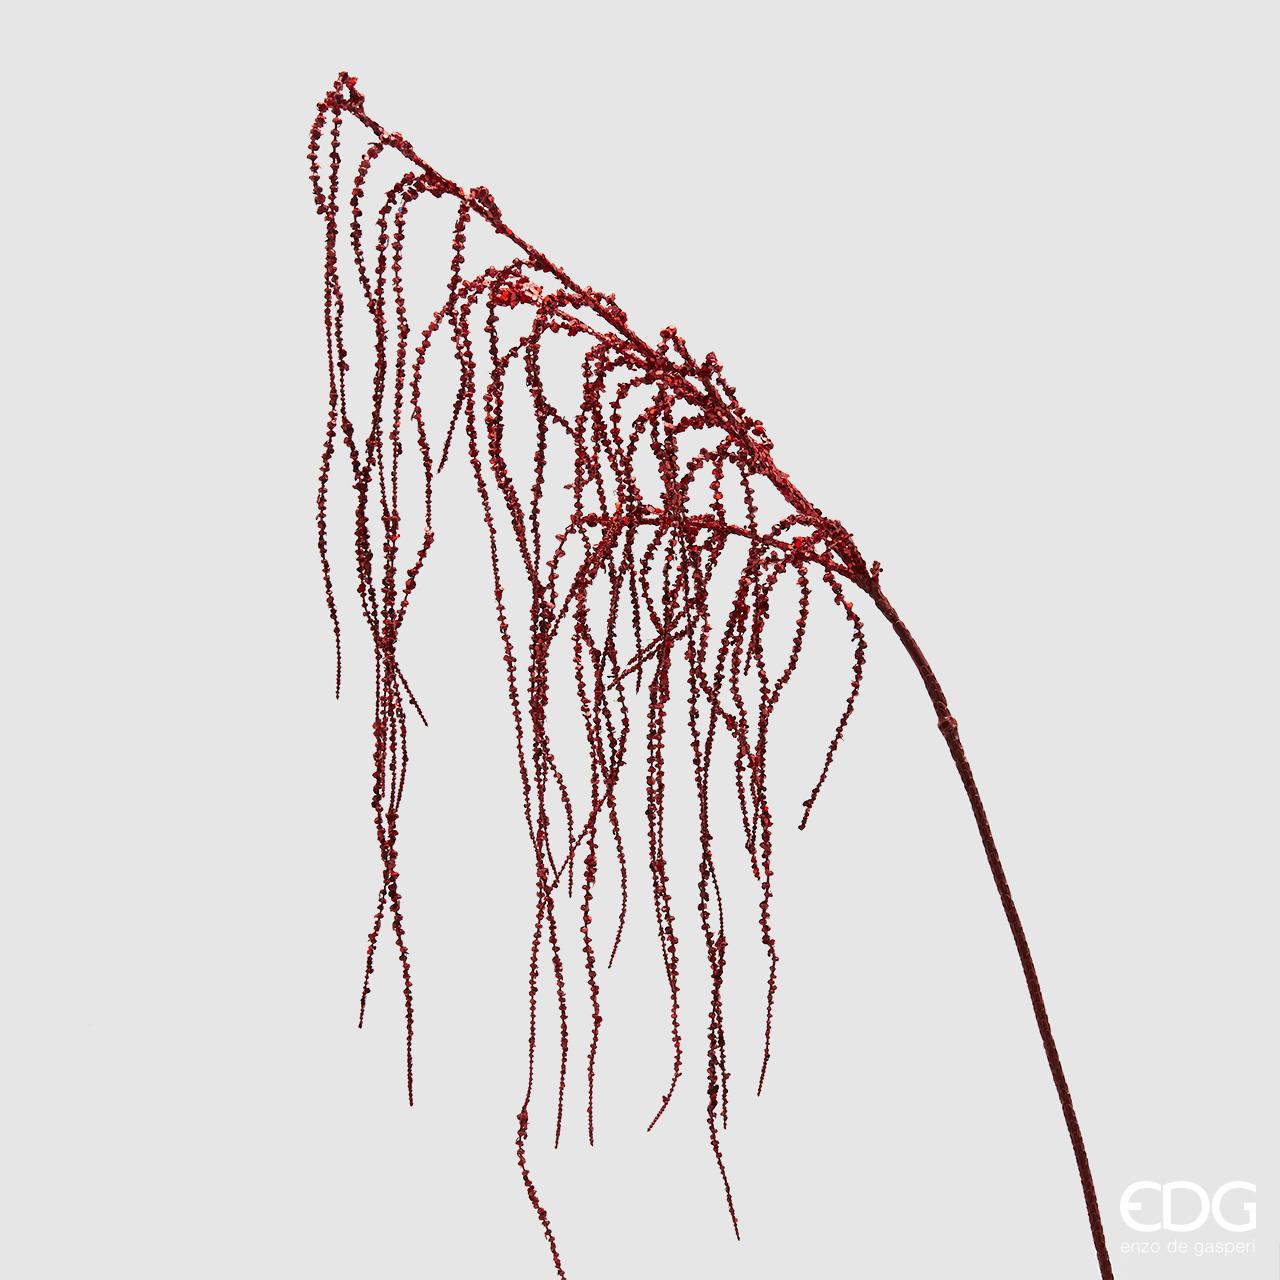 Ramo di Amaranthus glitterato rosso cm 89. Inserito in una composizione di fiori, questo ramo dà volume e un aspetto più raffinato.